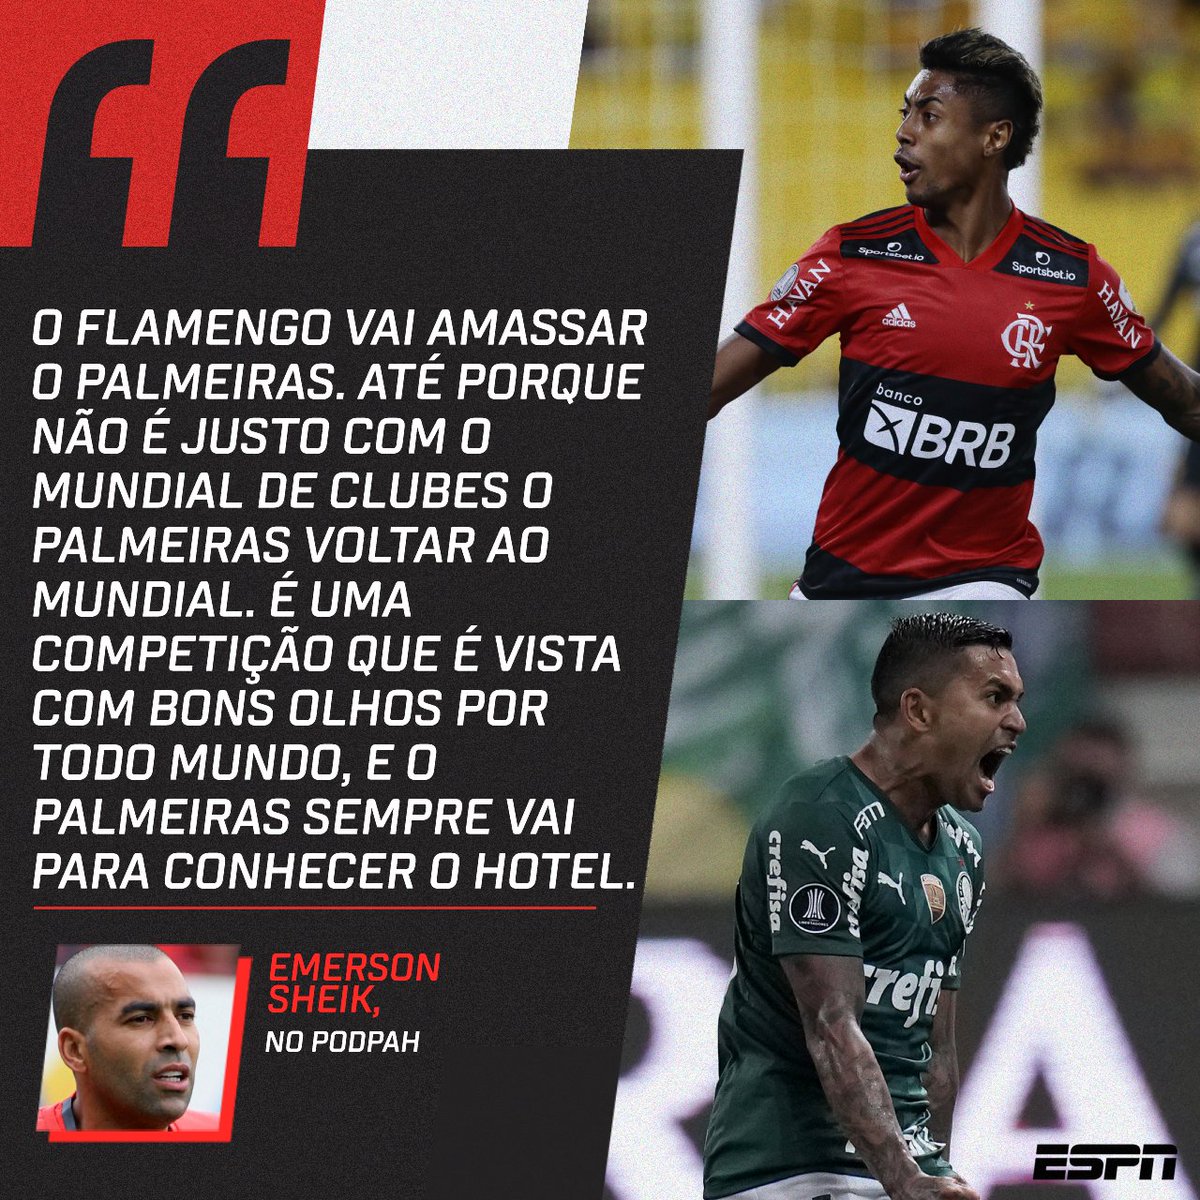 ESPN Brasil on X: Como você define o empate em 1 a 1? 👀 #FutebolNaESPN   / X